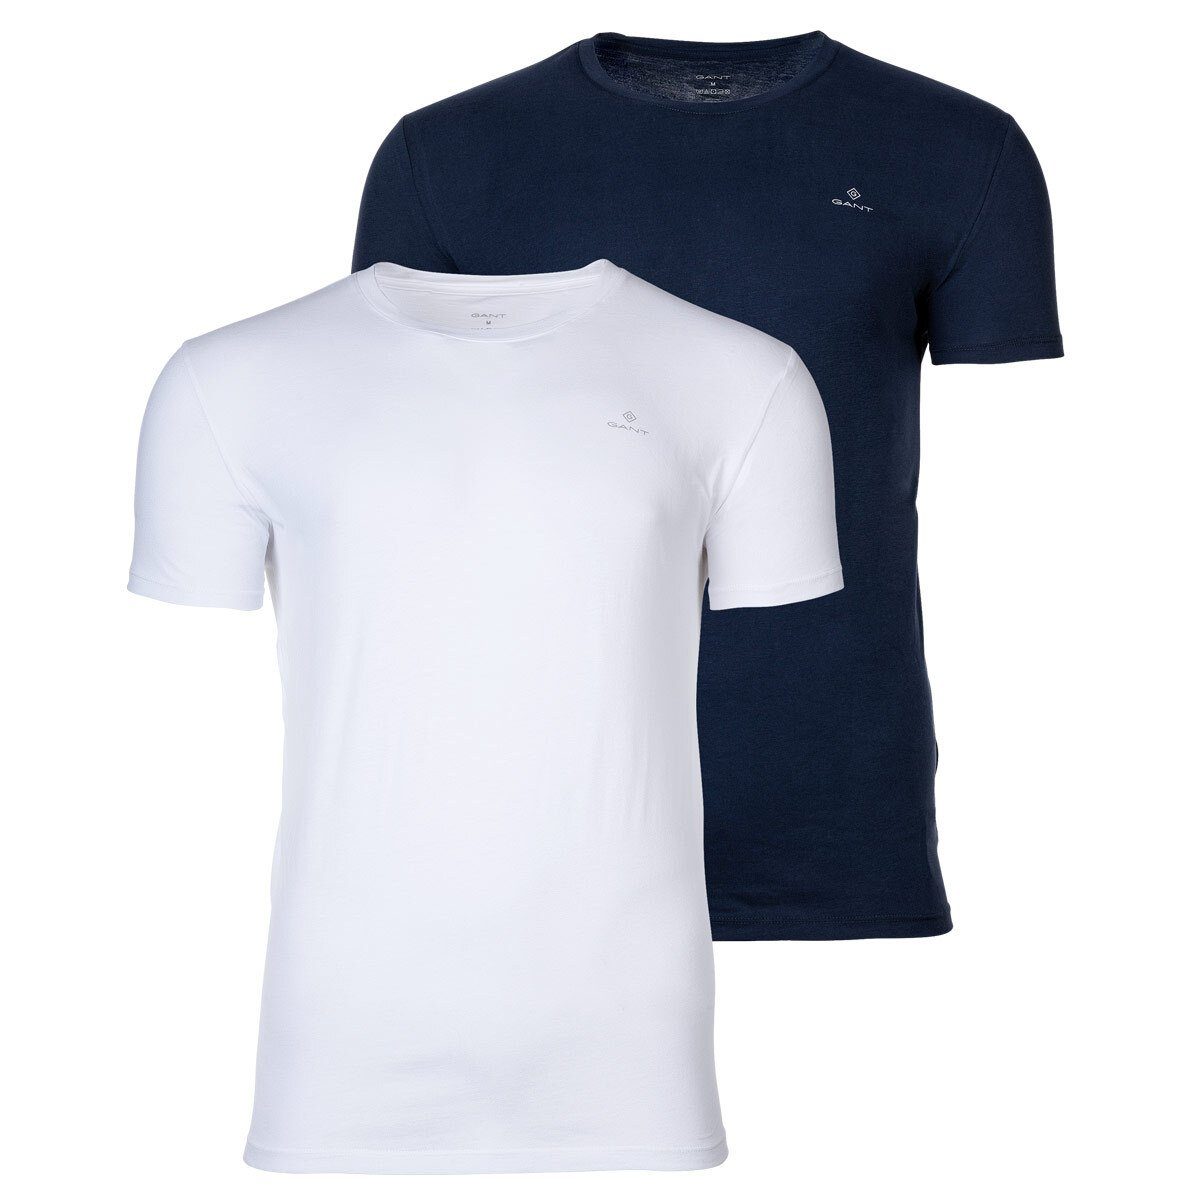 Gant T-Shirt Herren T-Shirt, 2er Pack - Rundhals, Crew Neck Marine/Weiß